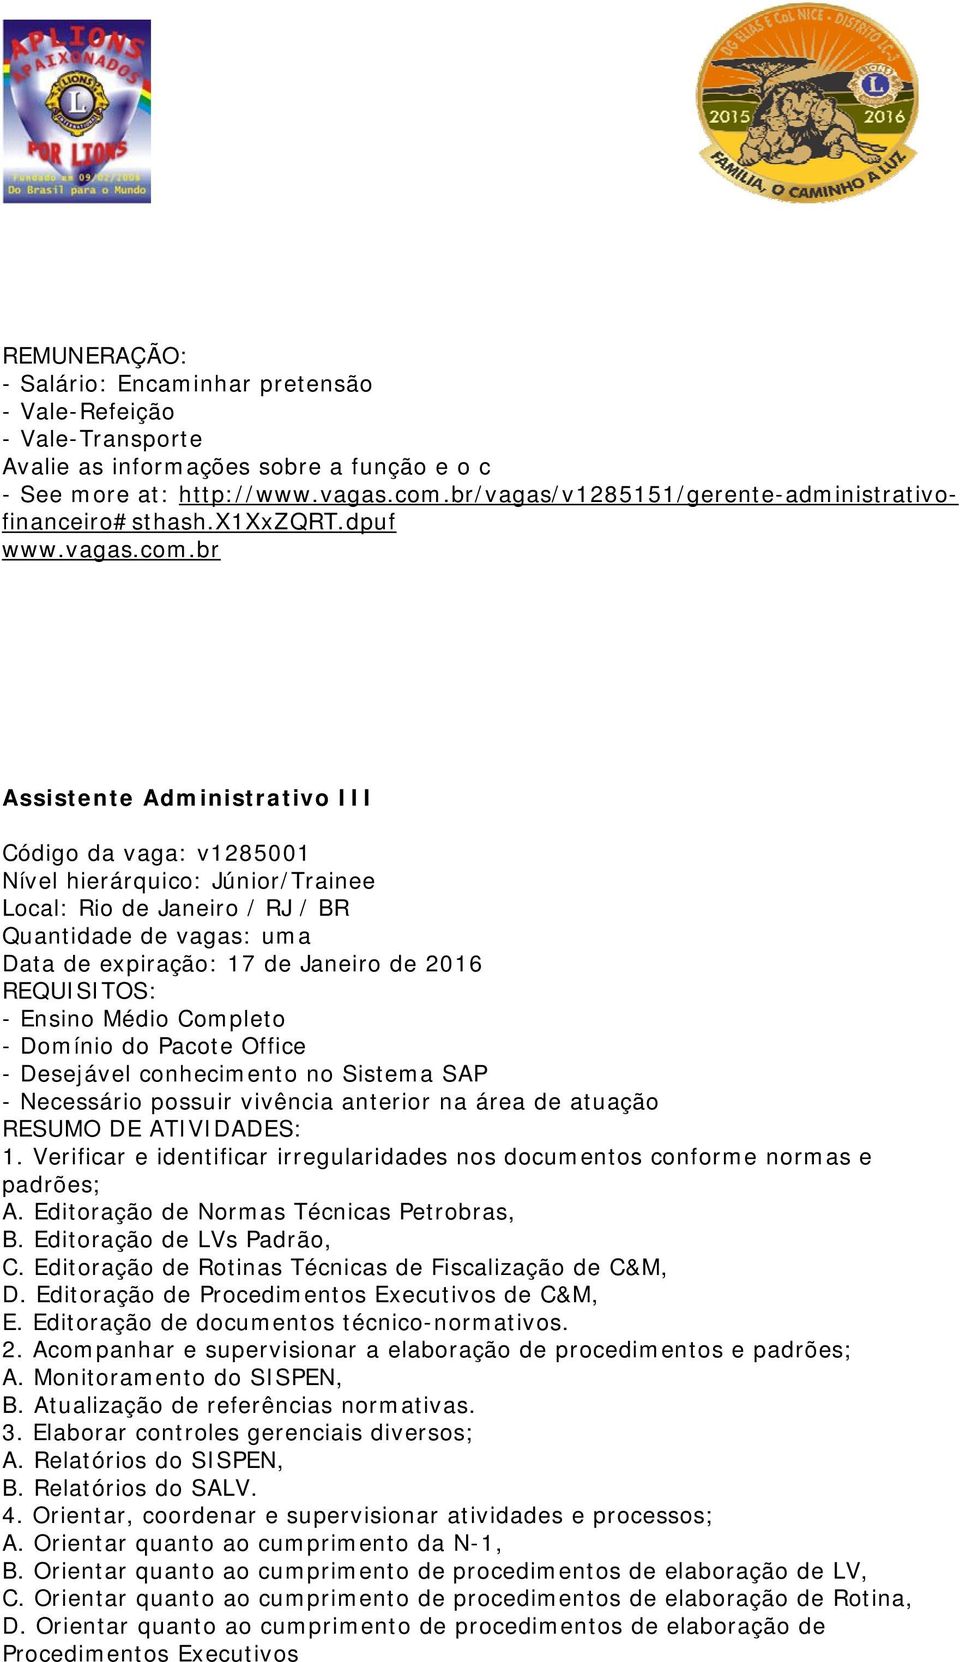 dpuf Assistente Administrativo III Código da vaga: v1285001 Nível hierárquico: Júnior/Trainee Local: Rio de Janeiro / RJ / BR Quantidade de vagas: uma Data de expiração: 17 de Janeiro de 2016